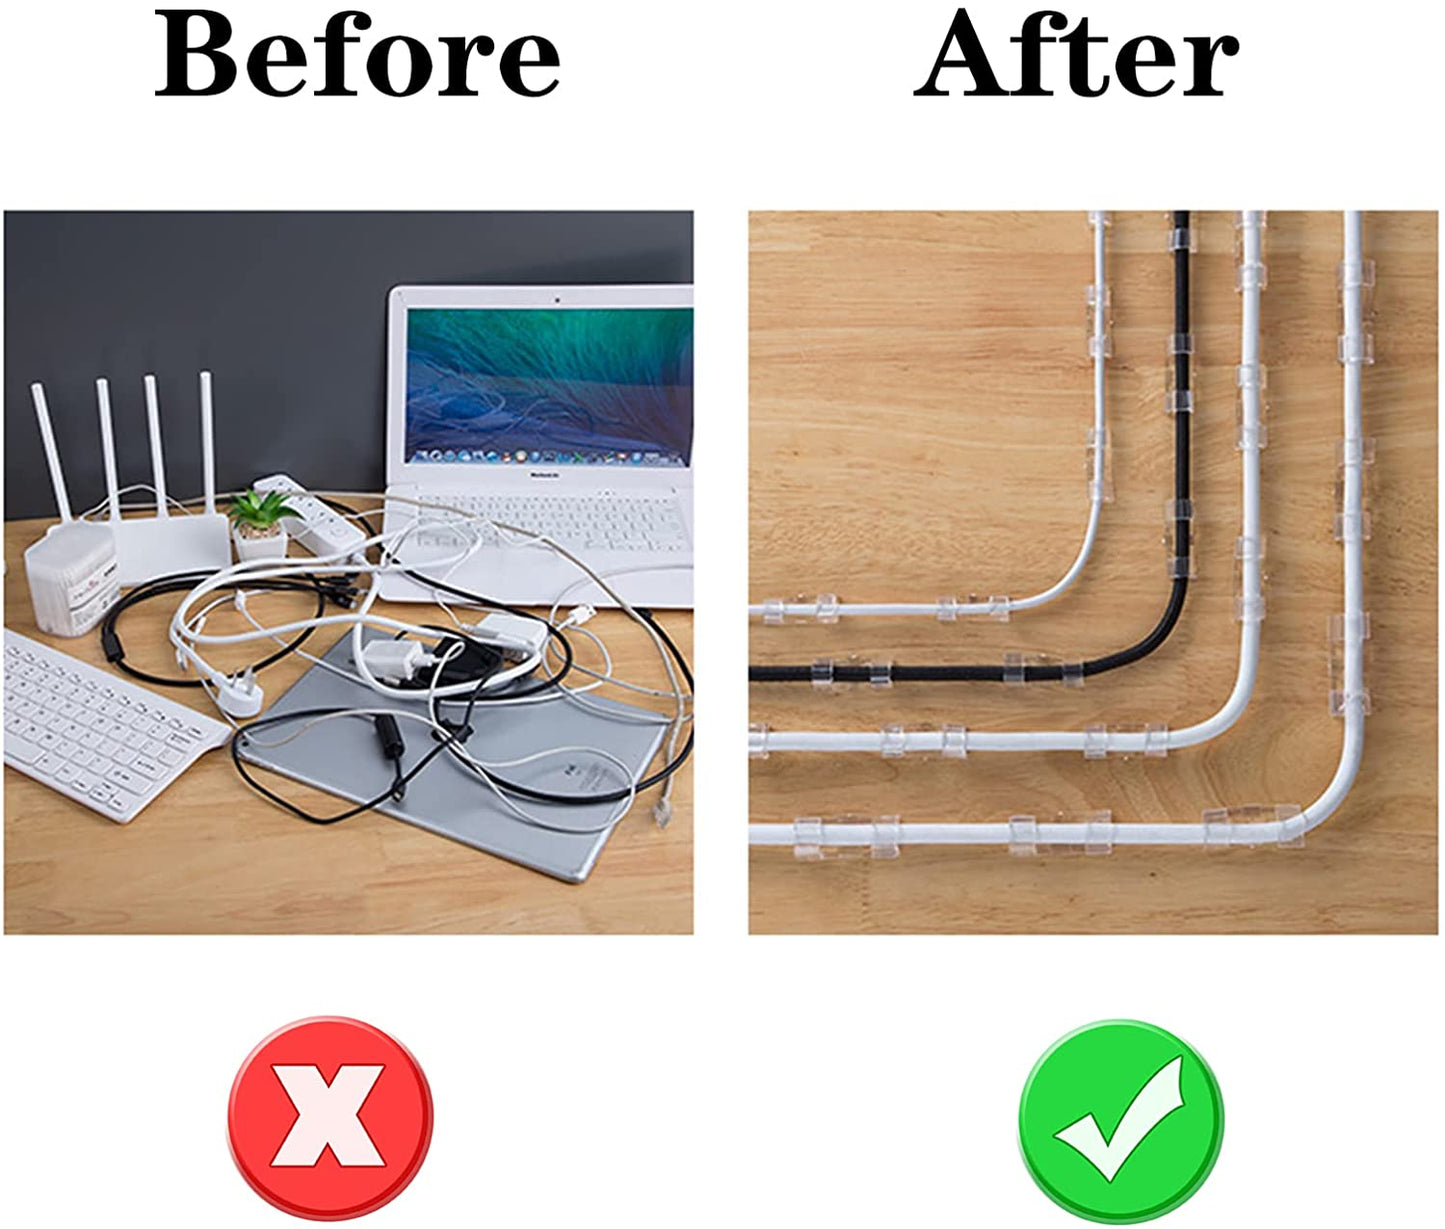 Nosilec kabla, samolepilna sponka za kabel za pod mizo, za organizacijo kablov - 5 kosov